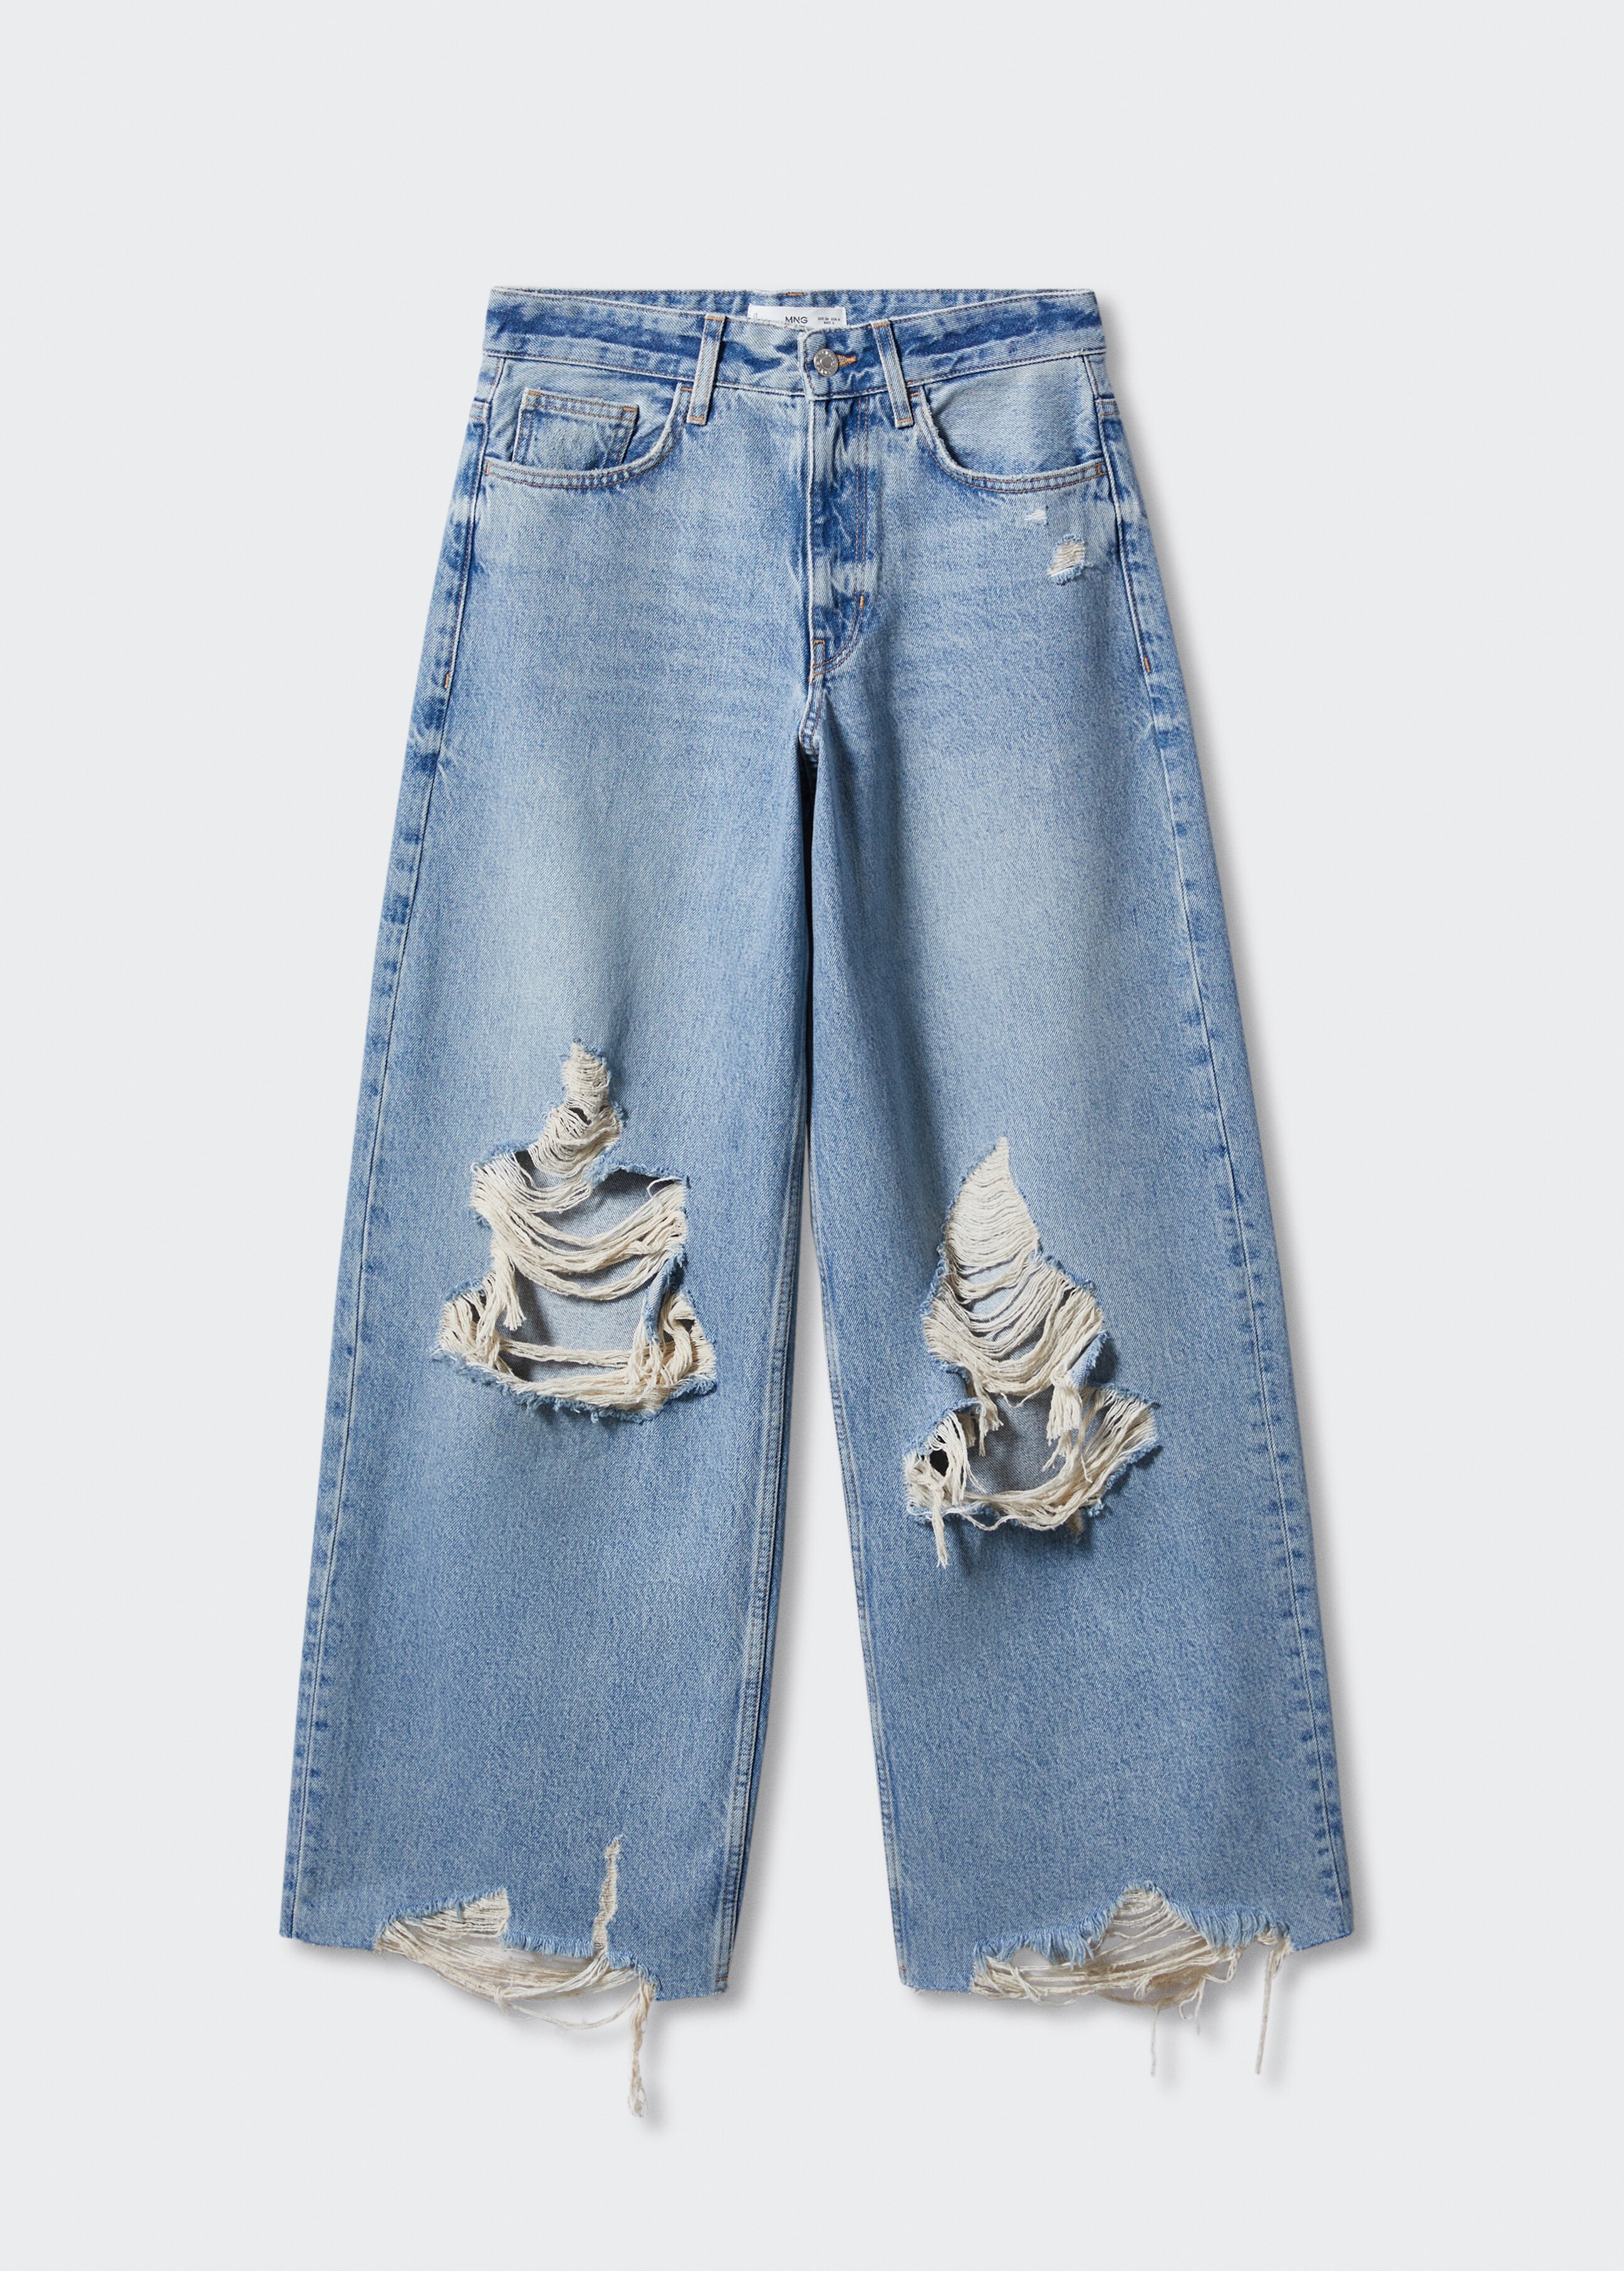 Jeans wideleg strappi decorativi - Articolo senza modello